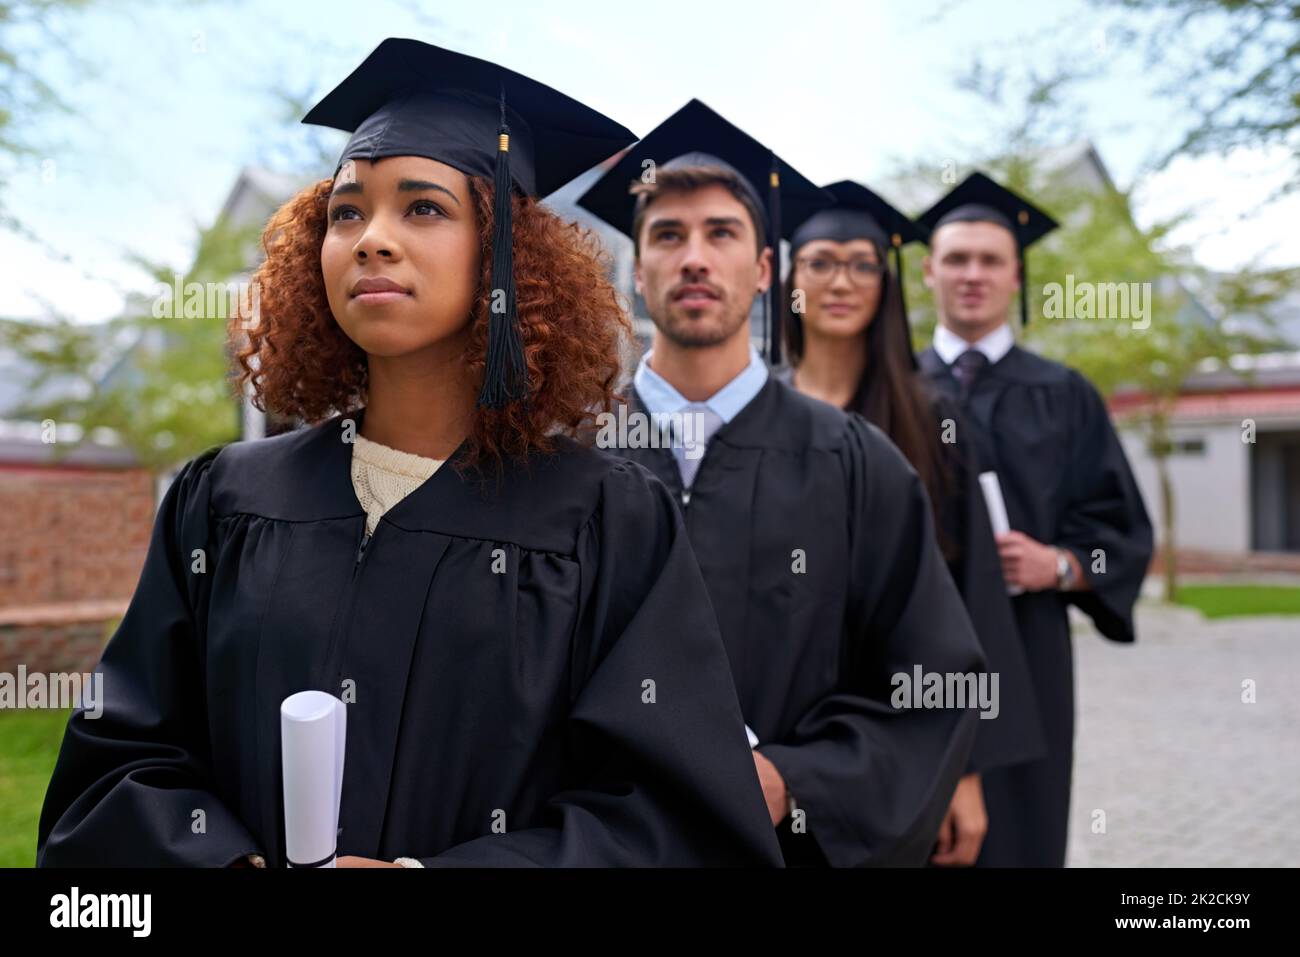 Hochschulbildung für hohe Ansprüche. Aufnahme von Studenten, die in einer Reihe stehen und nach oben schauen. Stockfoto